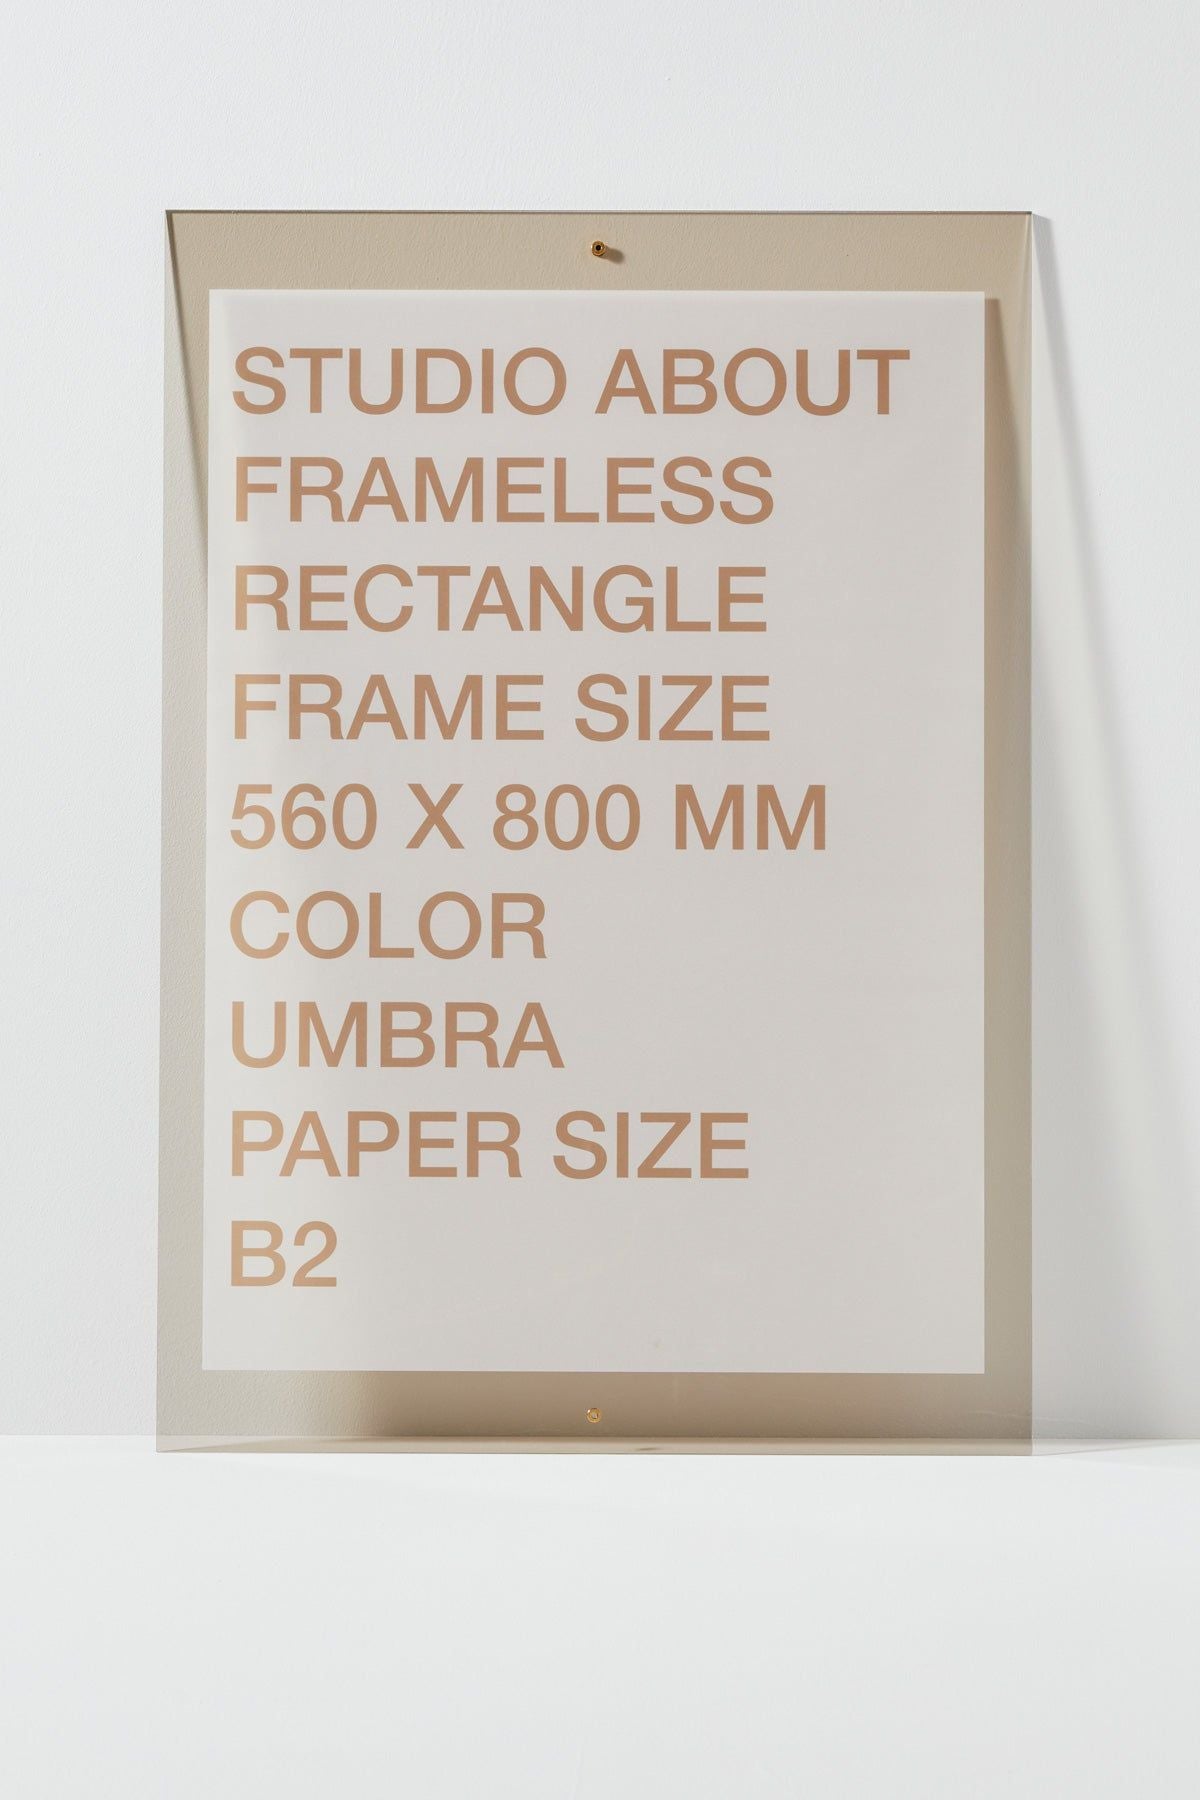 Studio About Frameless Frame B2 Rectangle, Umbra